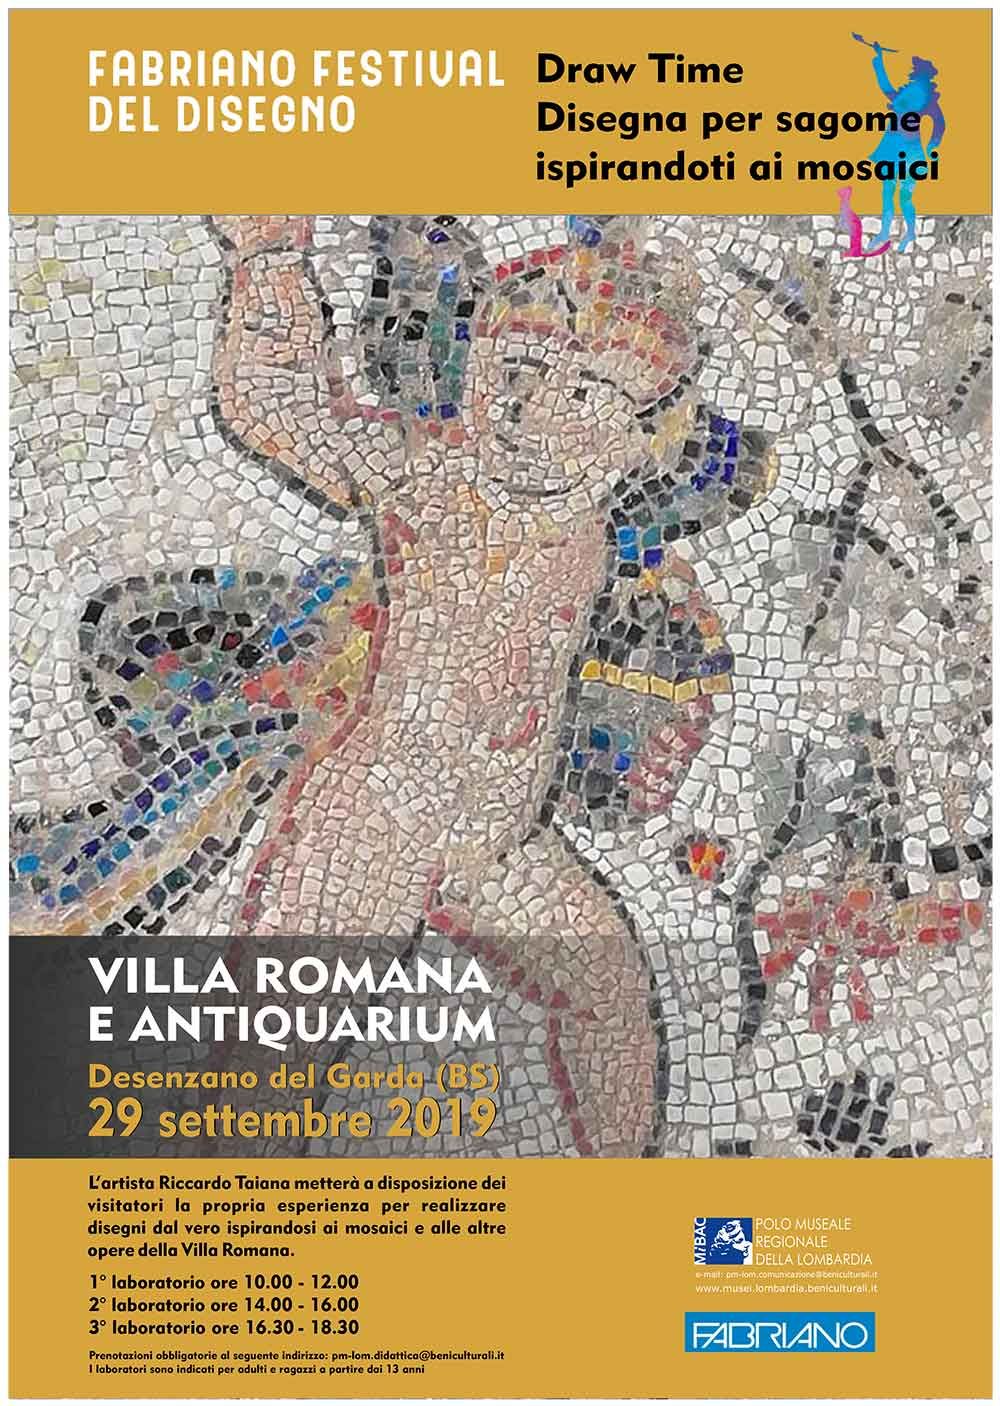 Fabriano-festival-del-disegno_-DRAW-TIME-_Villa-Romana-29-settembre